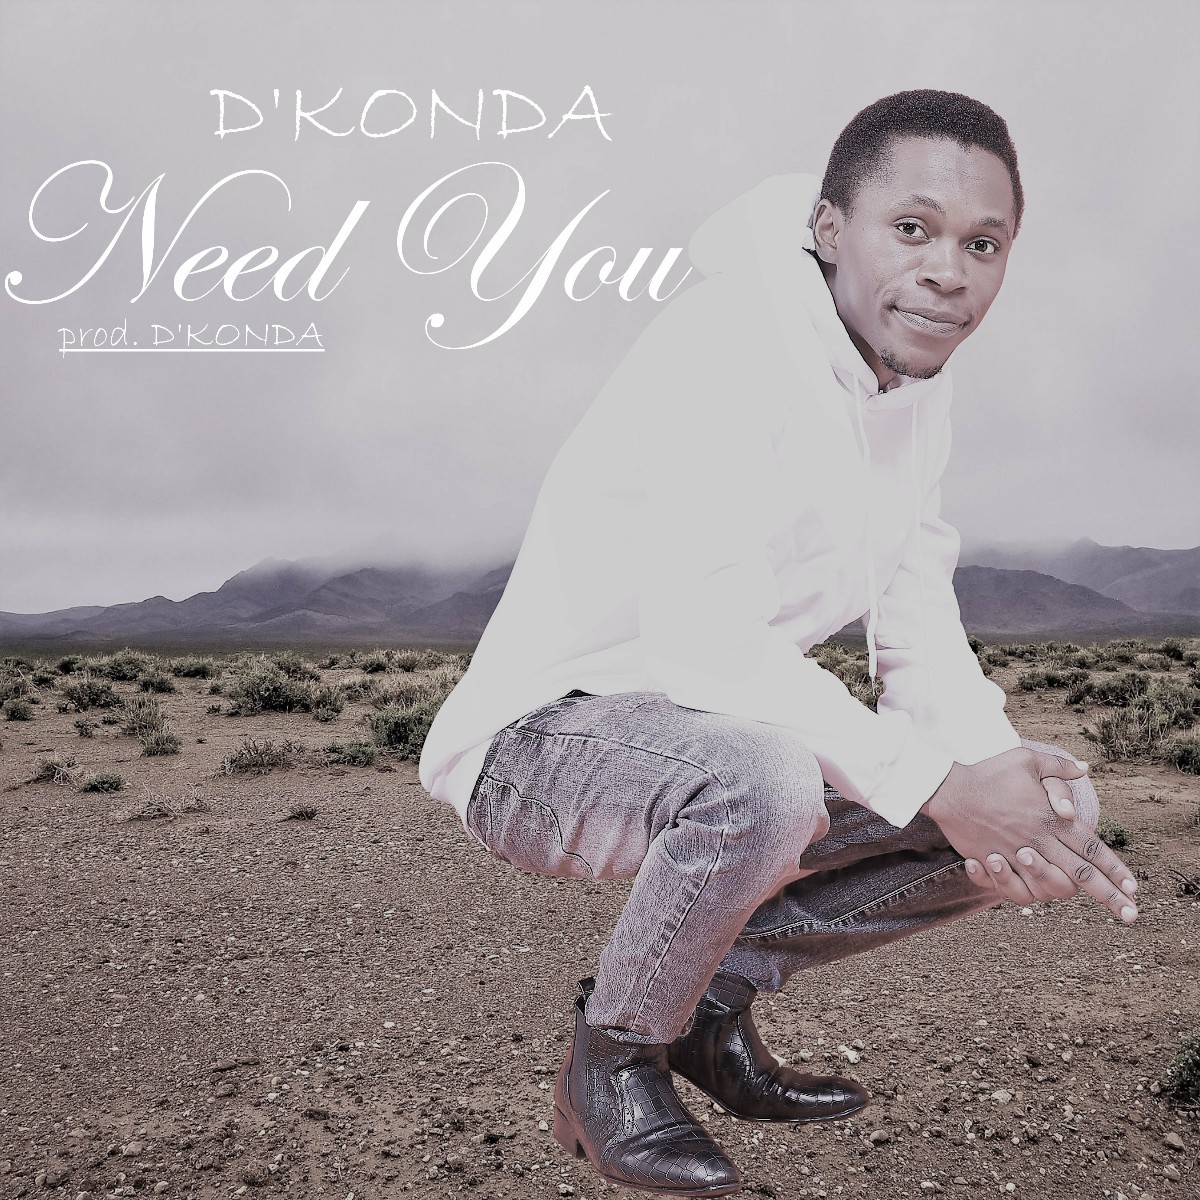 D'Konda - Need You